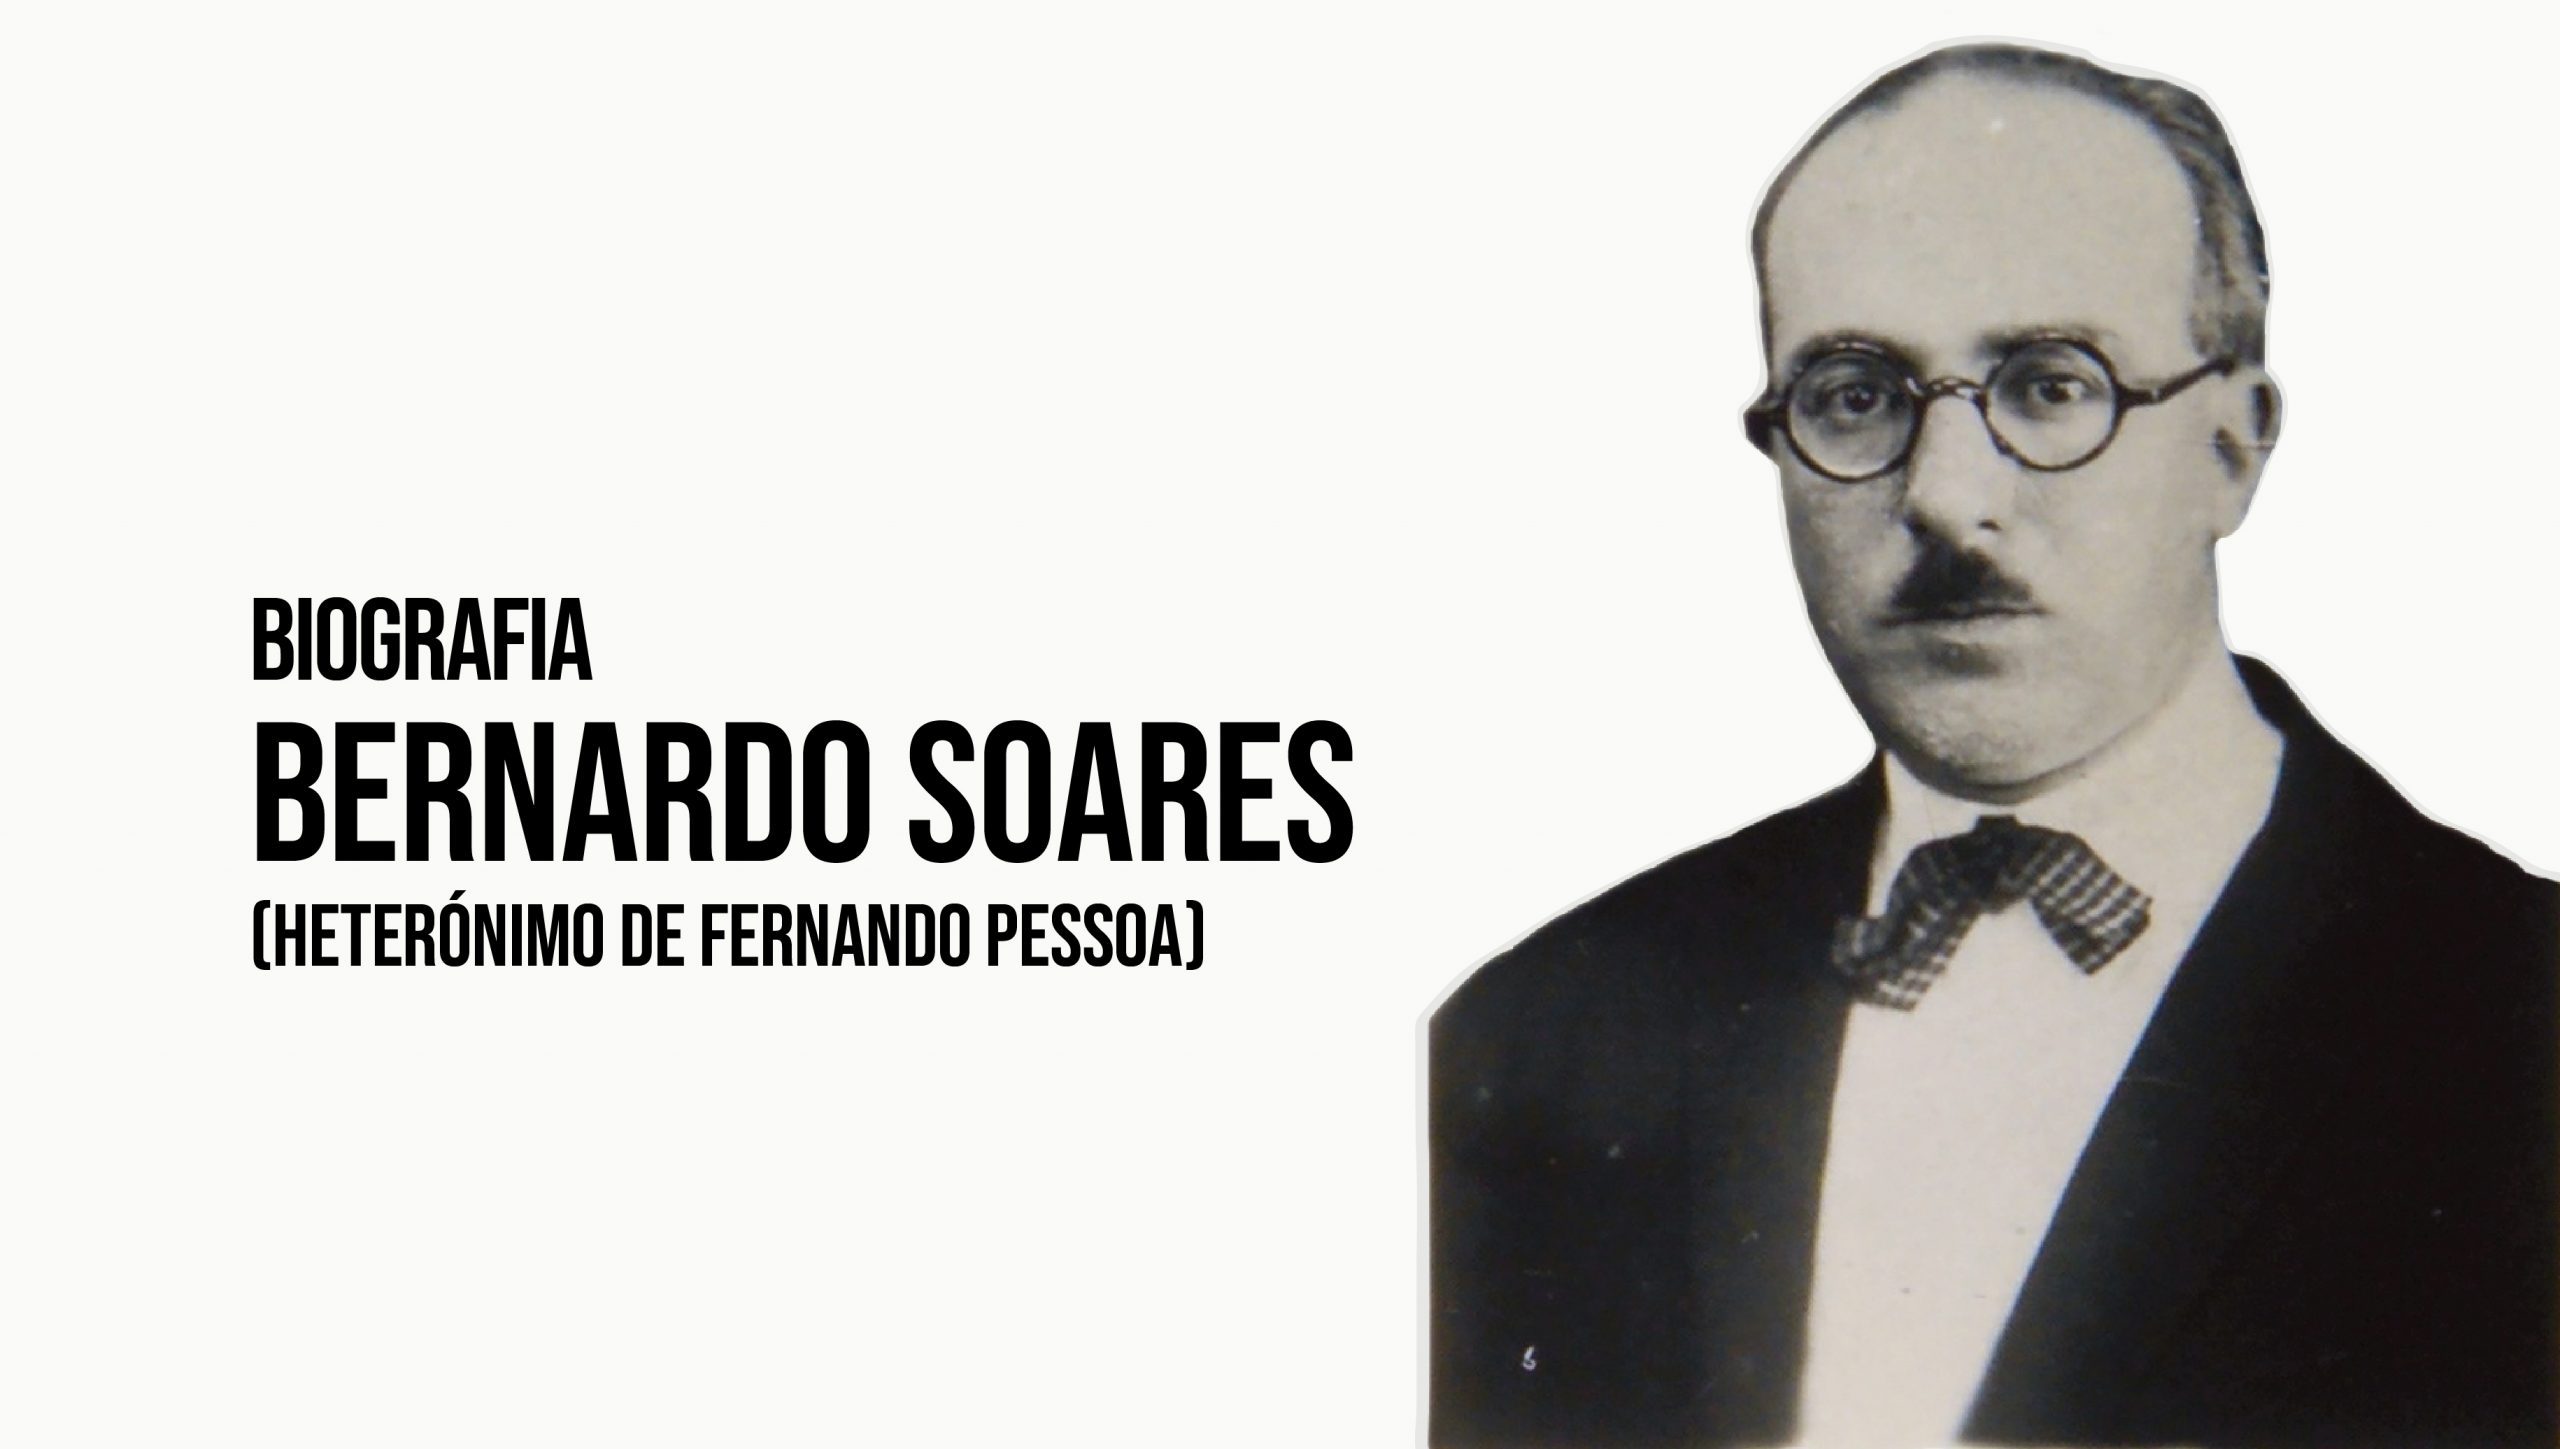 Bernardo Soares